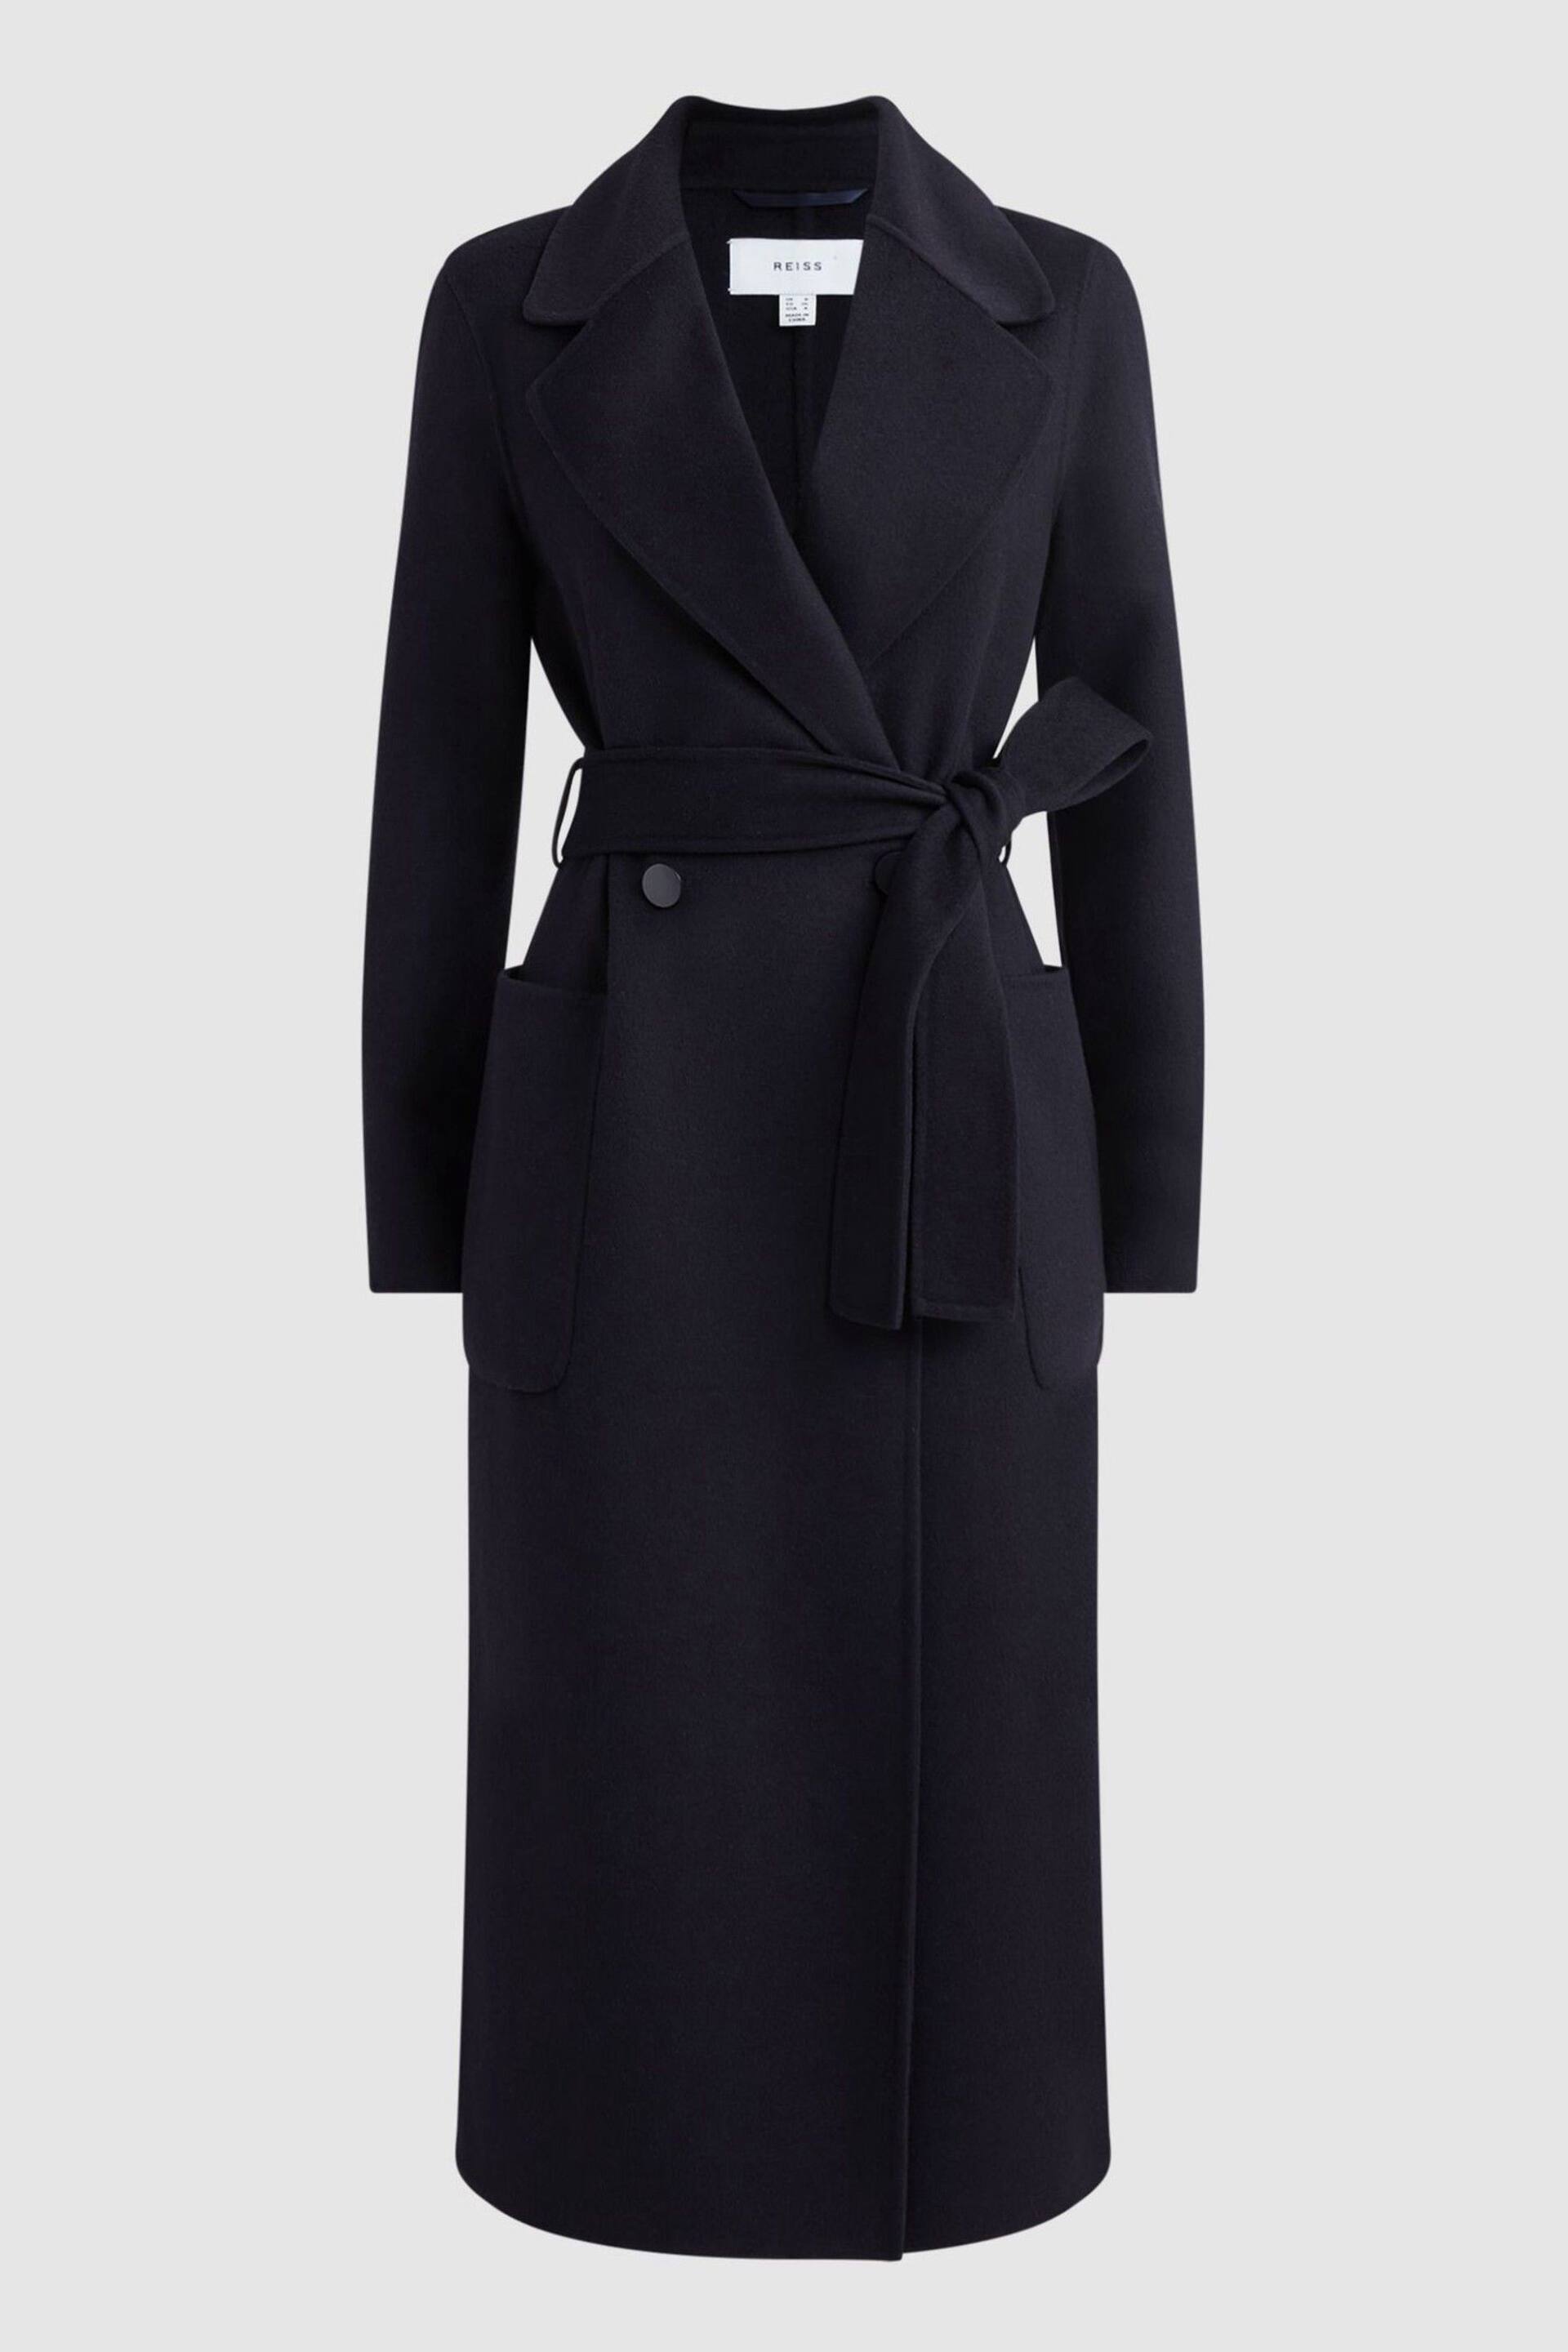 Reiss Navy Lucia Long Wool Blend Blindseam Coat - Image 2 of 5